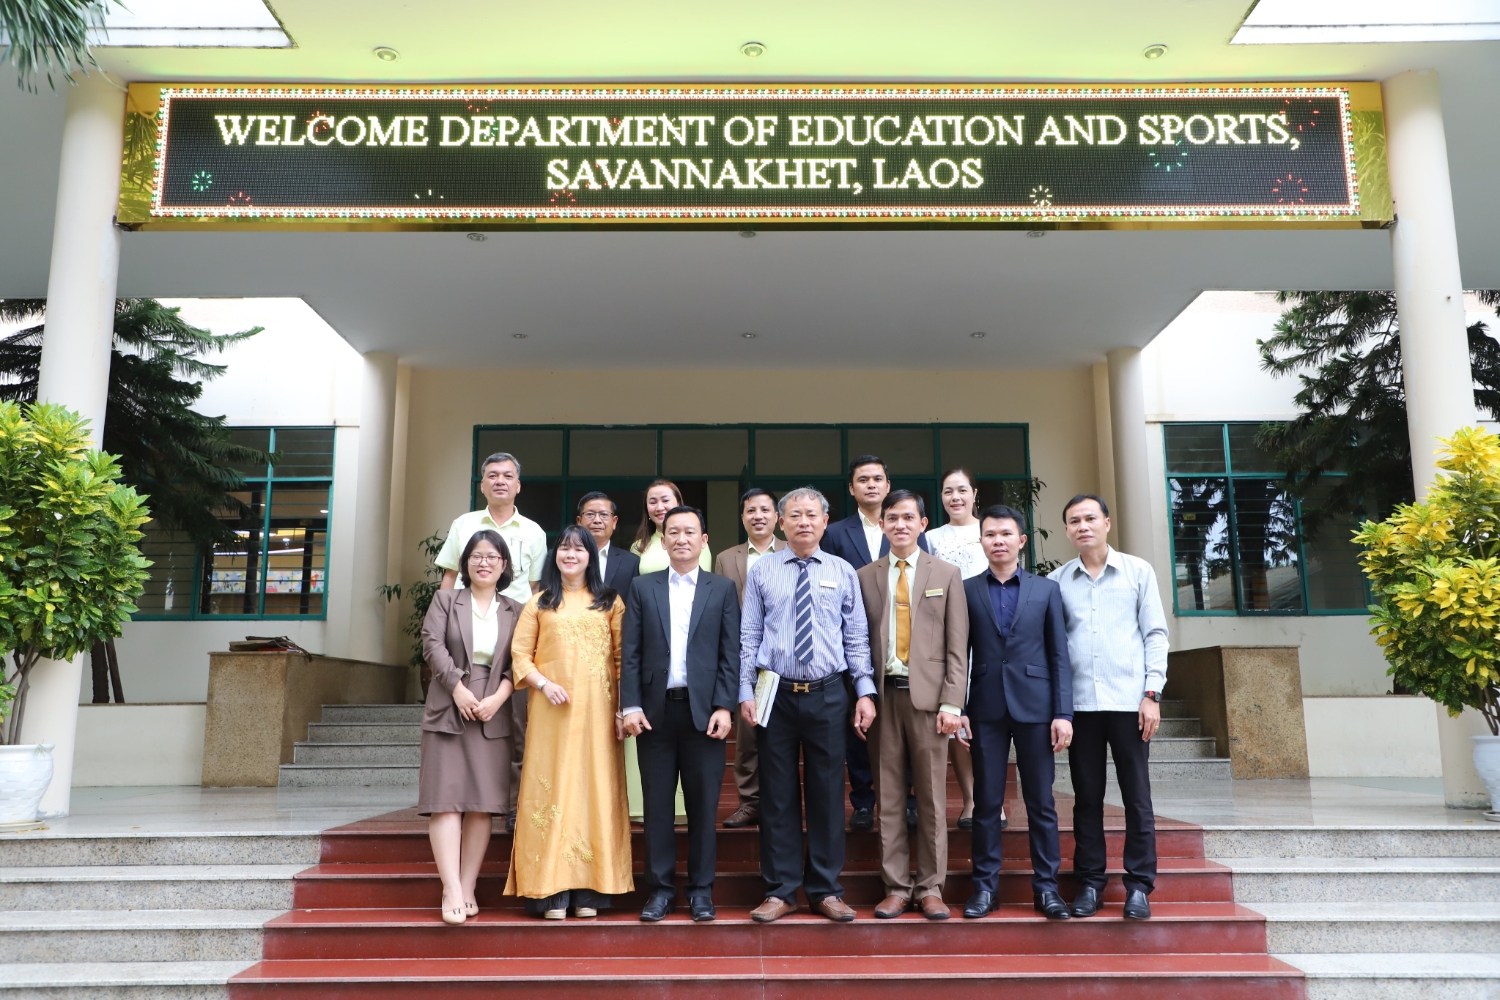 Đoàn làm việc sở Giáo dục và Thể Thao tỉnh Savannakhet (Lào), đến thăm và làm việc tại Trường Đại học Sư phạm – ĐHĐN